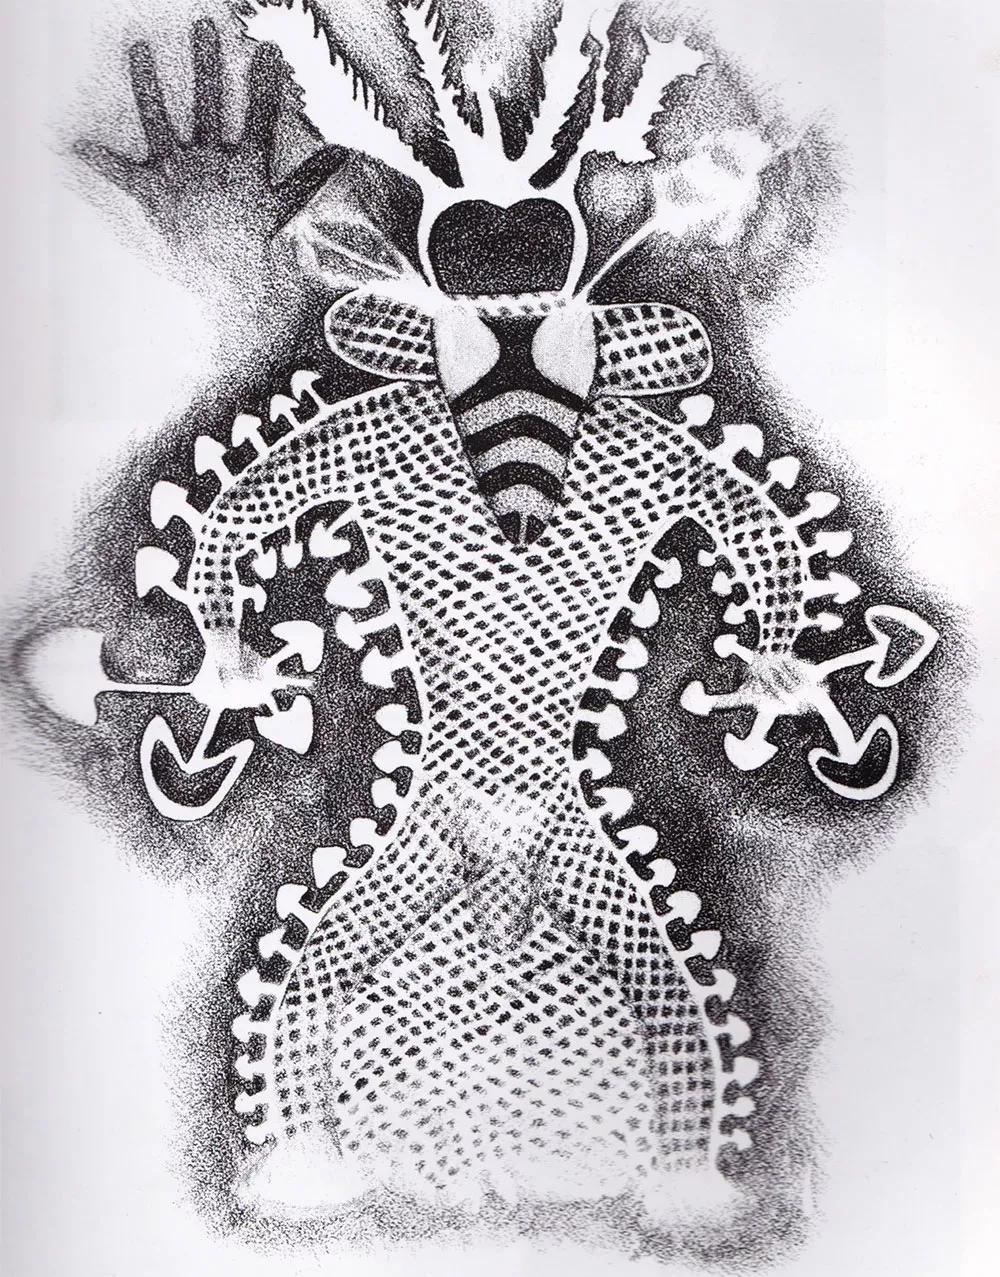 “Divinidad de los hongos”. Relieve de pintura prehistórica de Tin Taharin, Tassili, Argelia, 6000-5000 a.C.